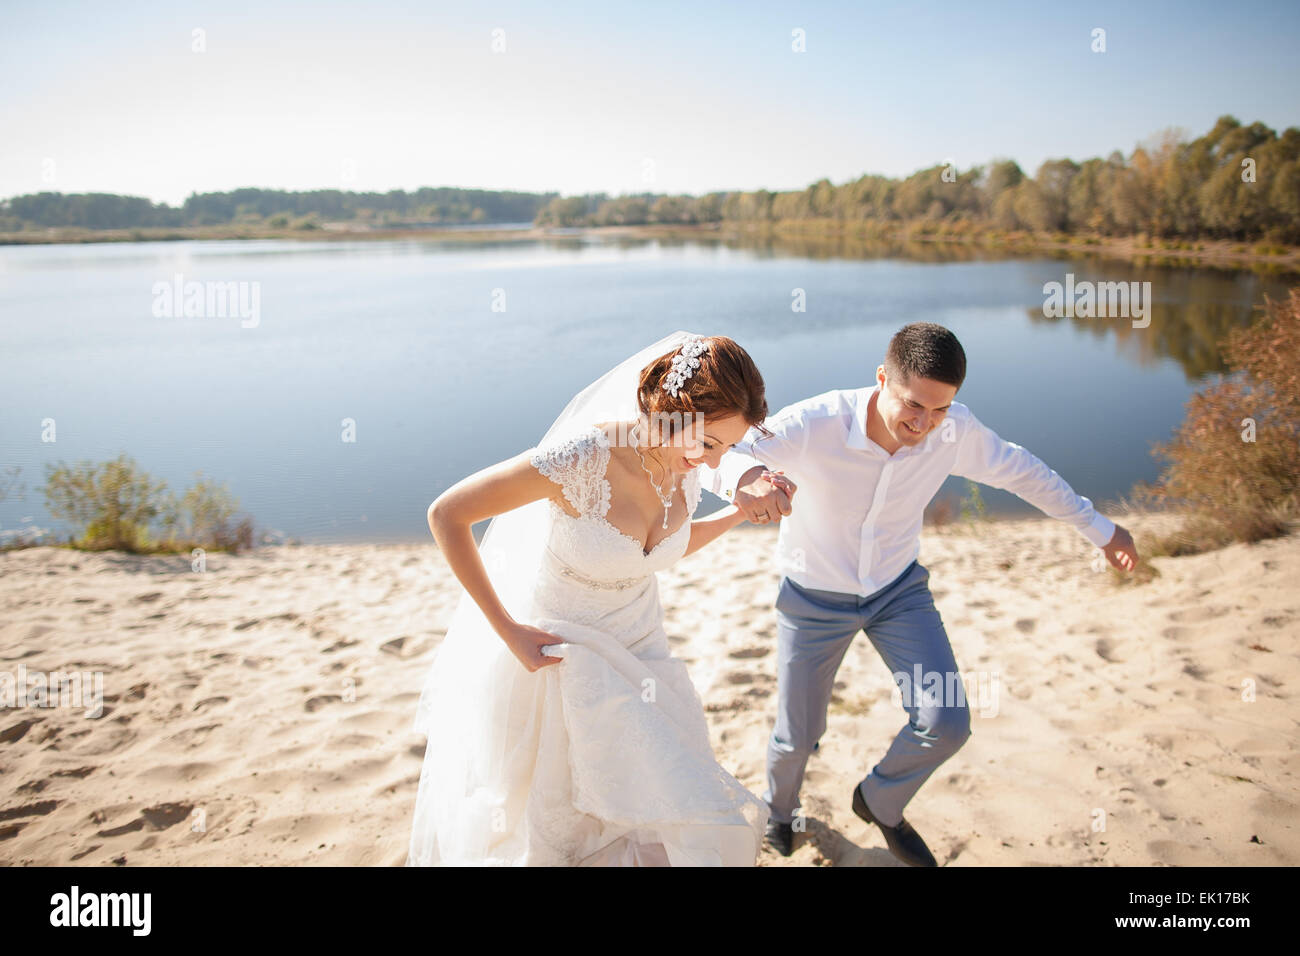 La novia y el novio, alegría en una playa, Pareja romántica Foto de stock